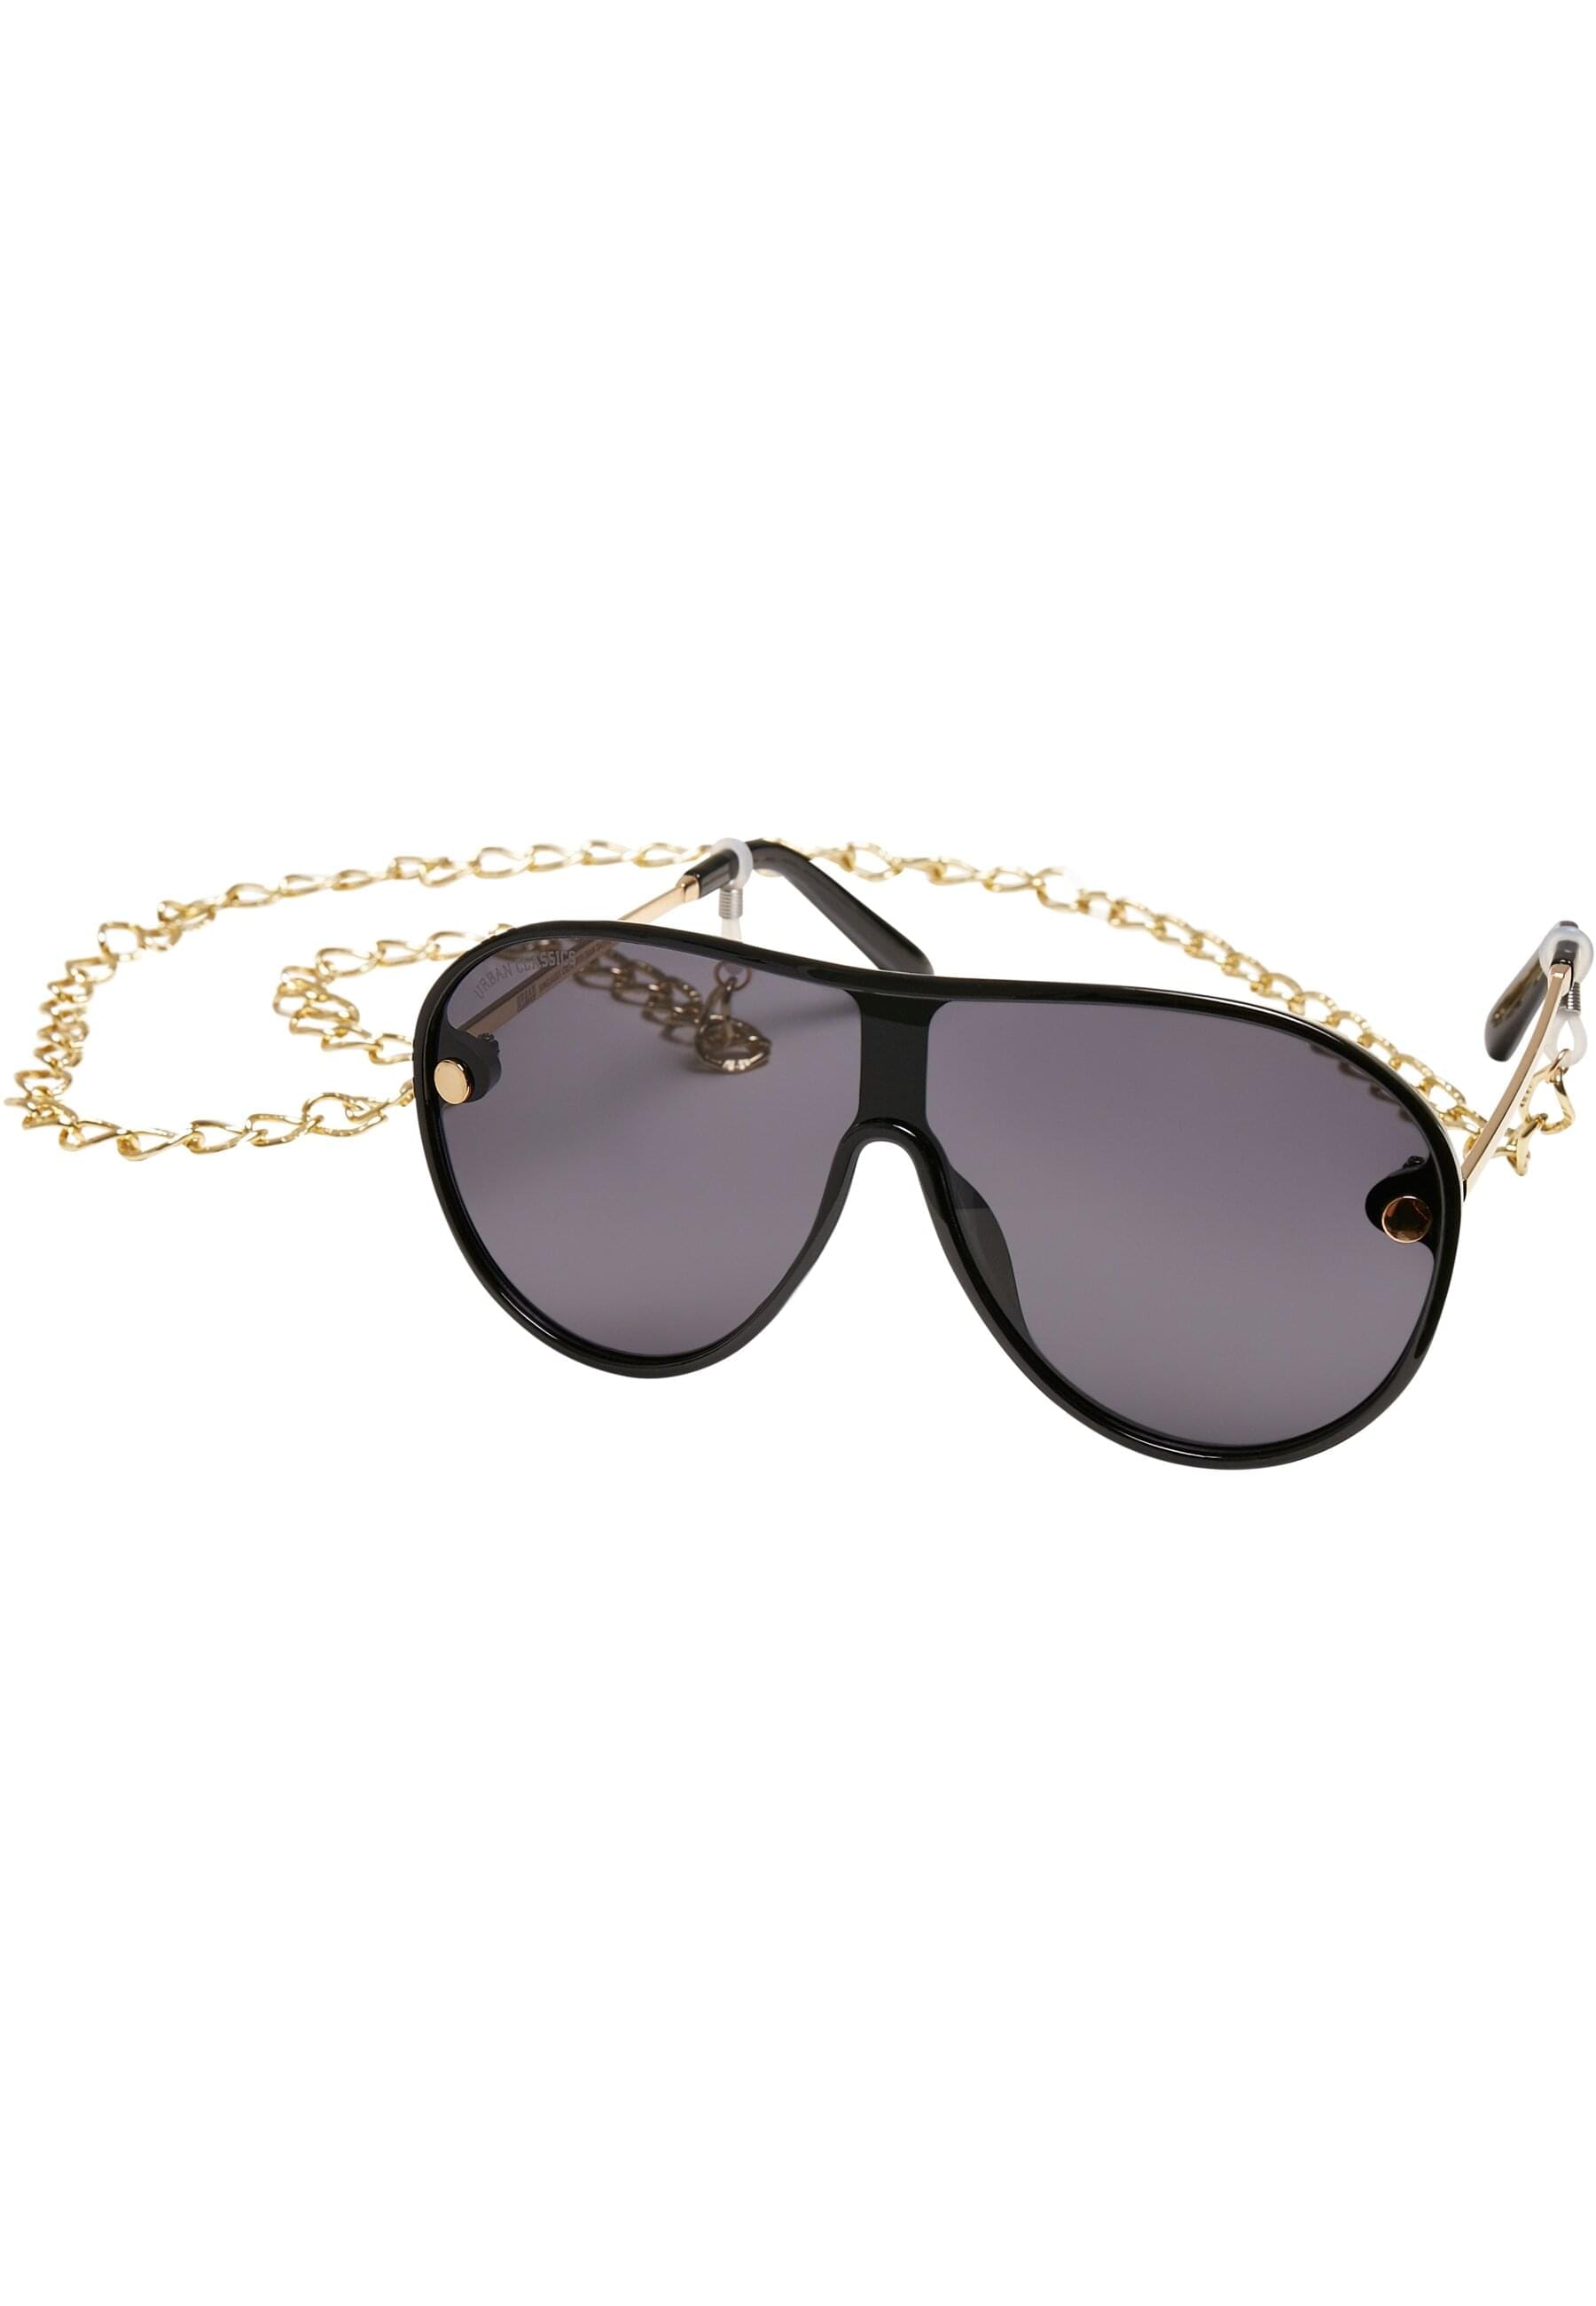 URBAN CLASSICS Sonnenbrille BAUR With Naxos Sunglasses bestellen »Unisex Chain« 